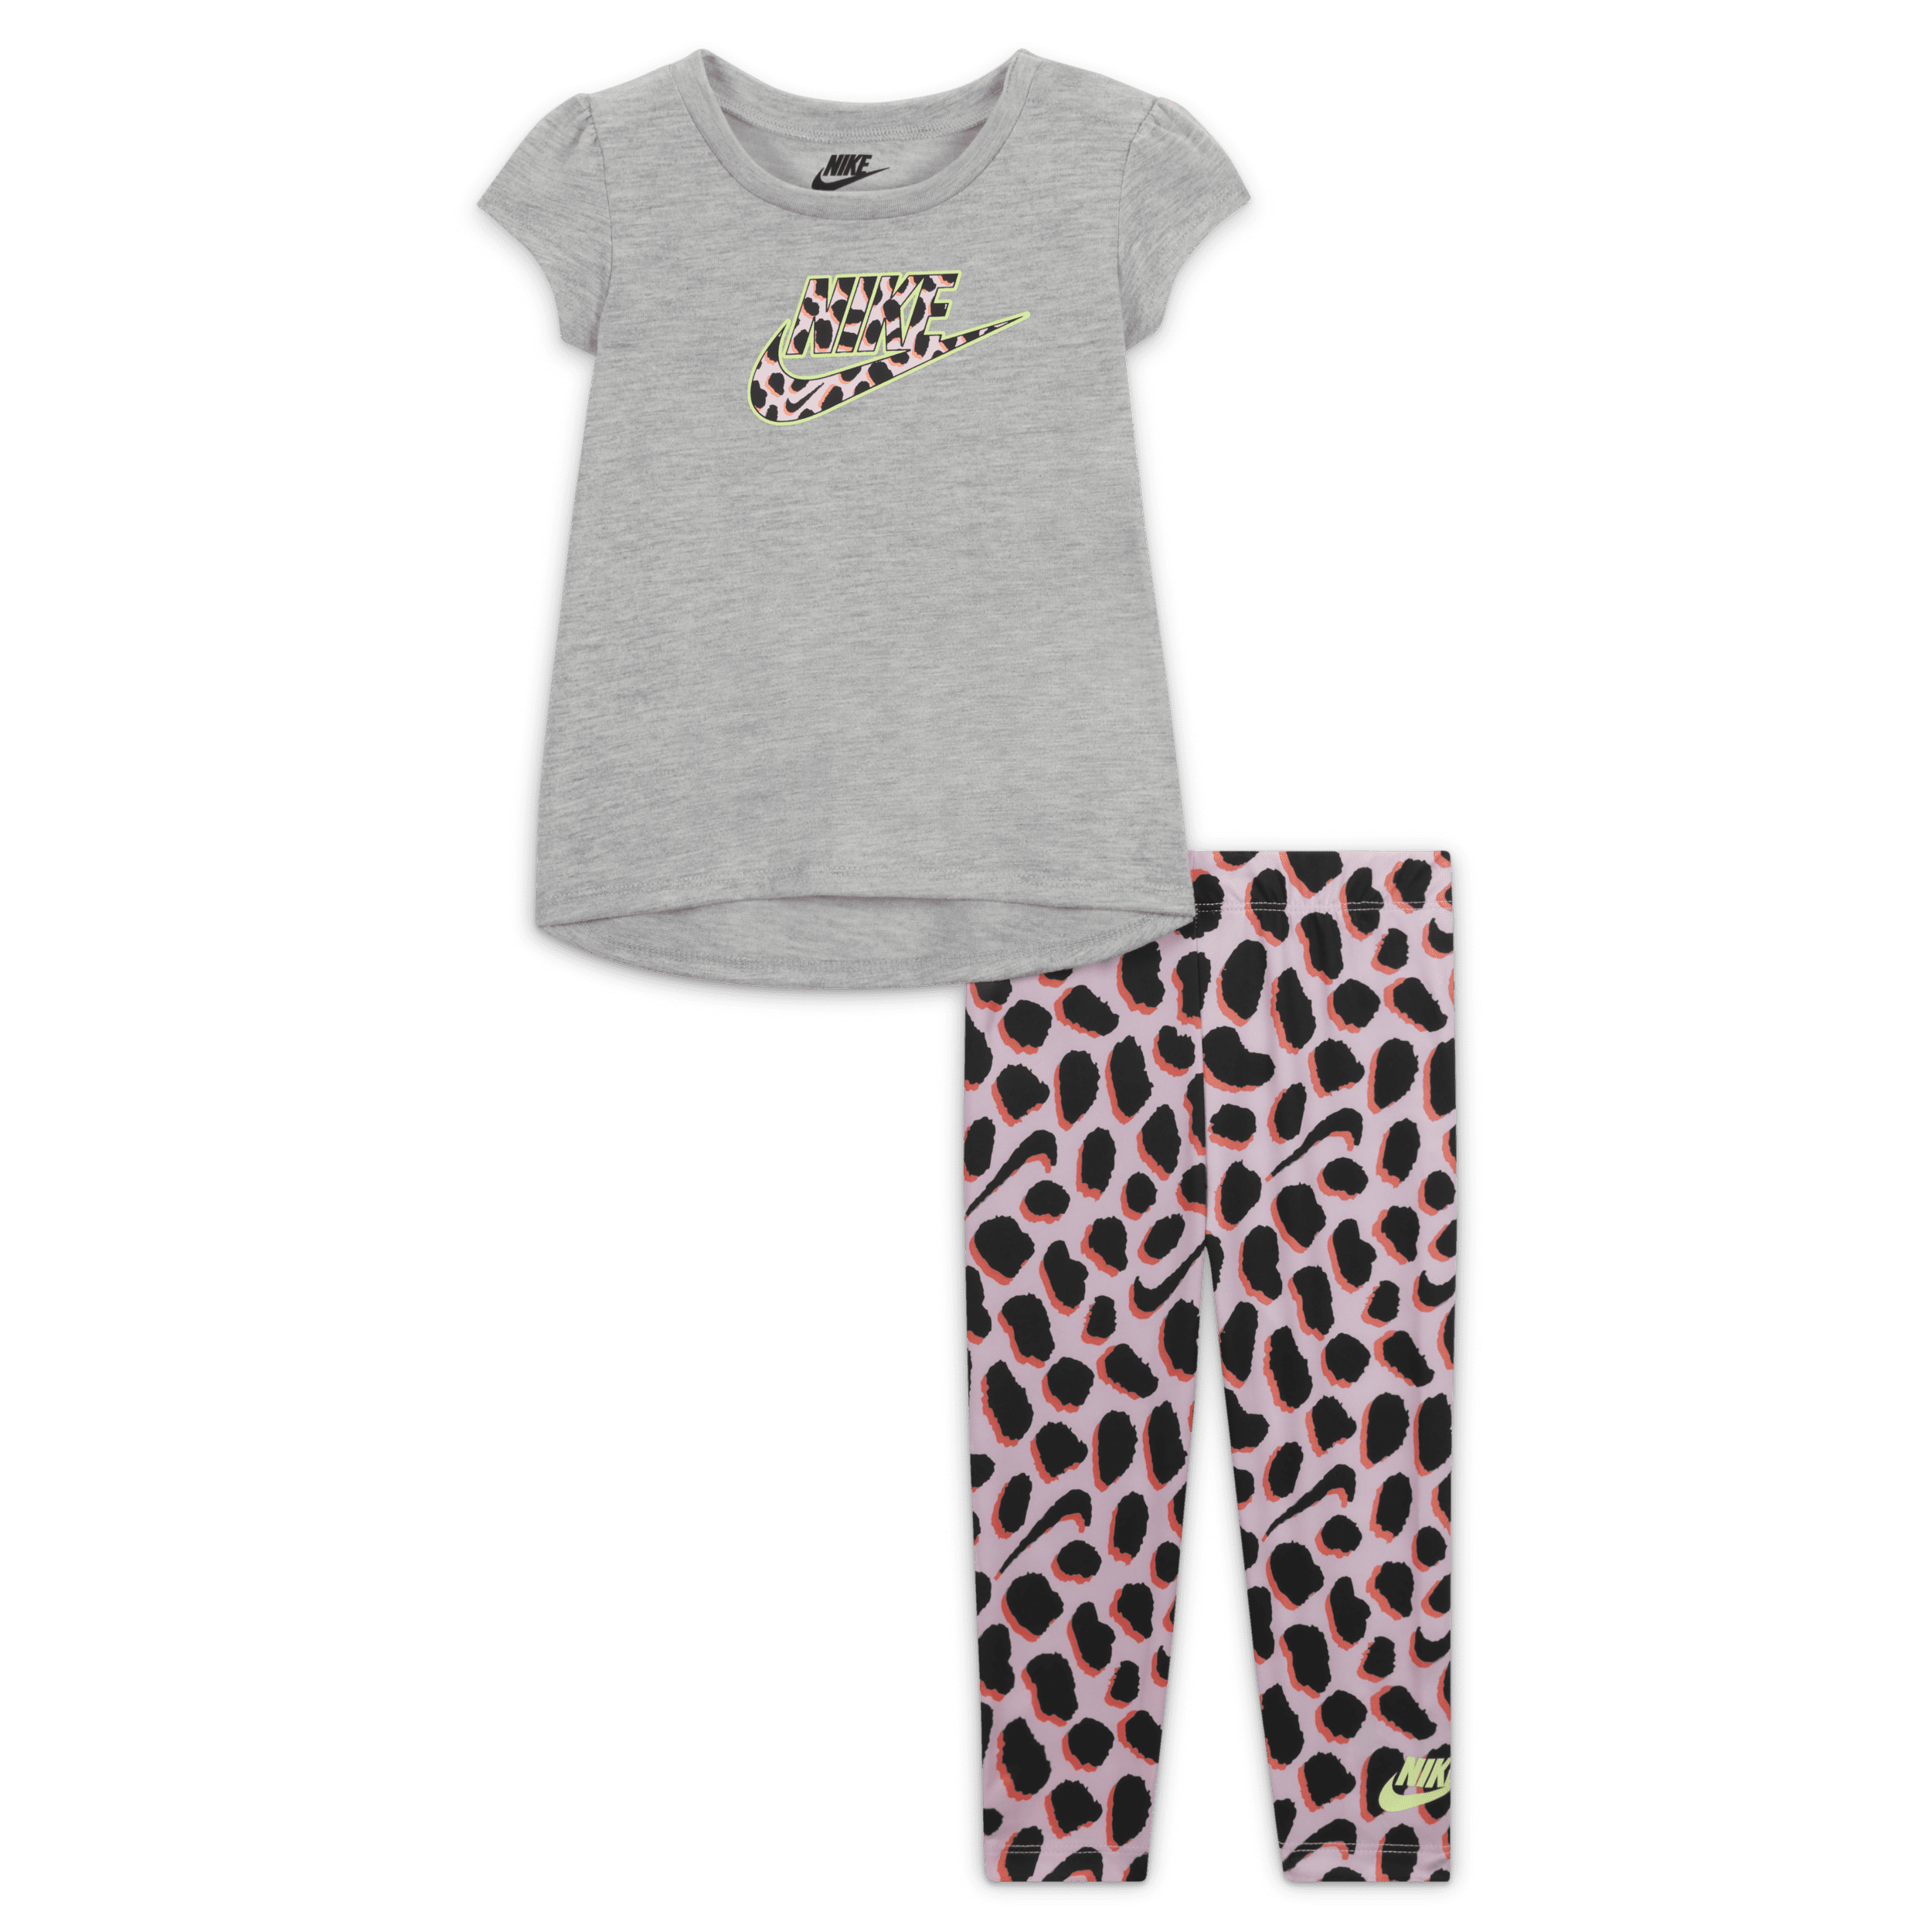 Nike Set met T-shirt en legging voor baby's (12-24 maanden) - Roze